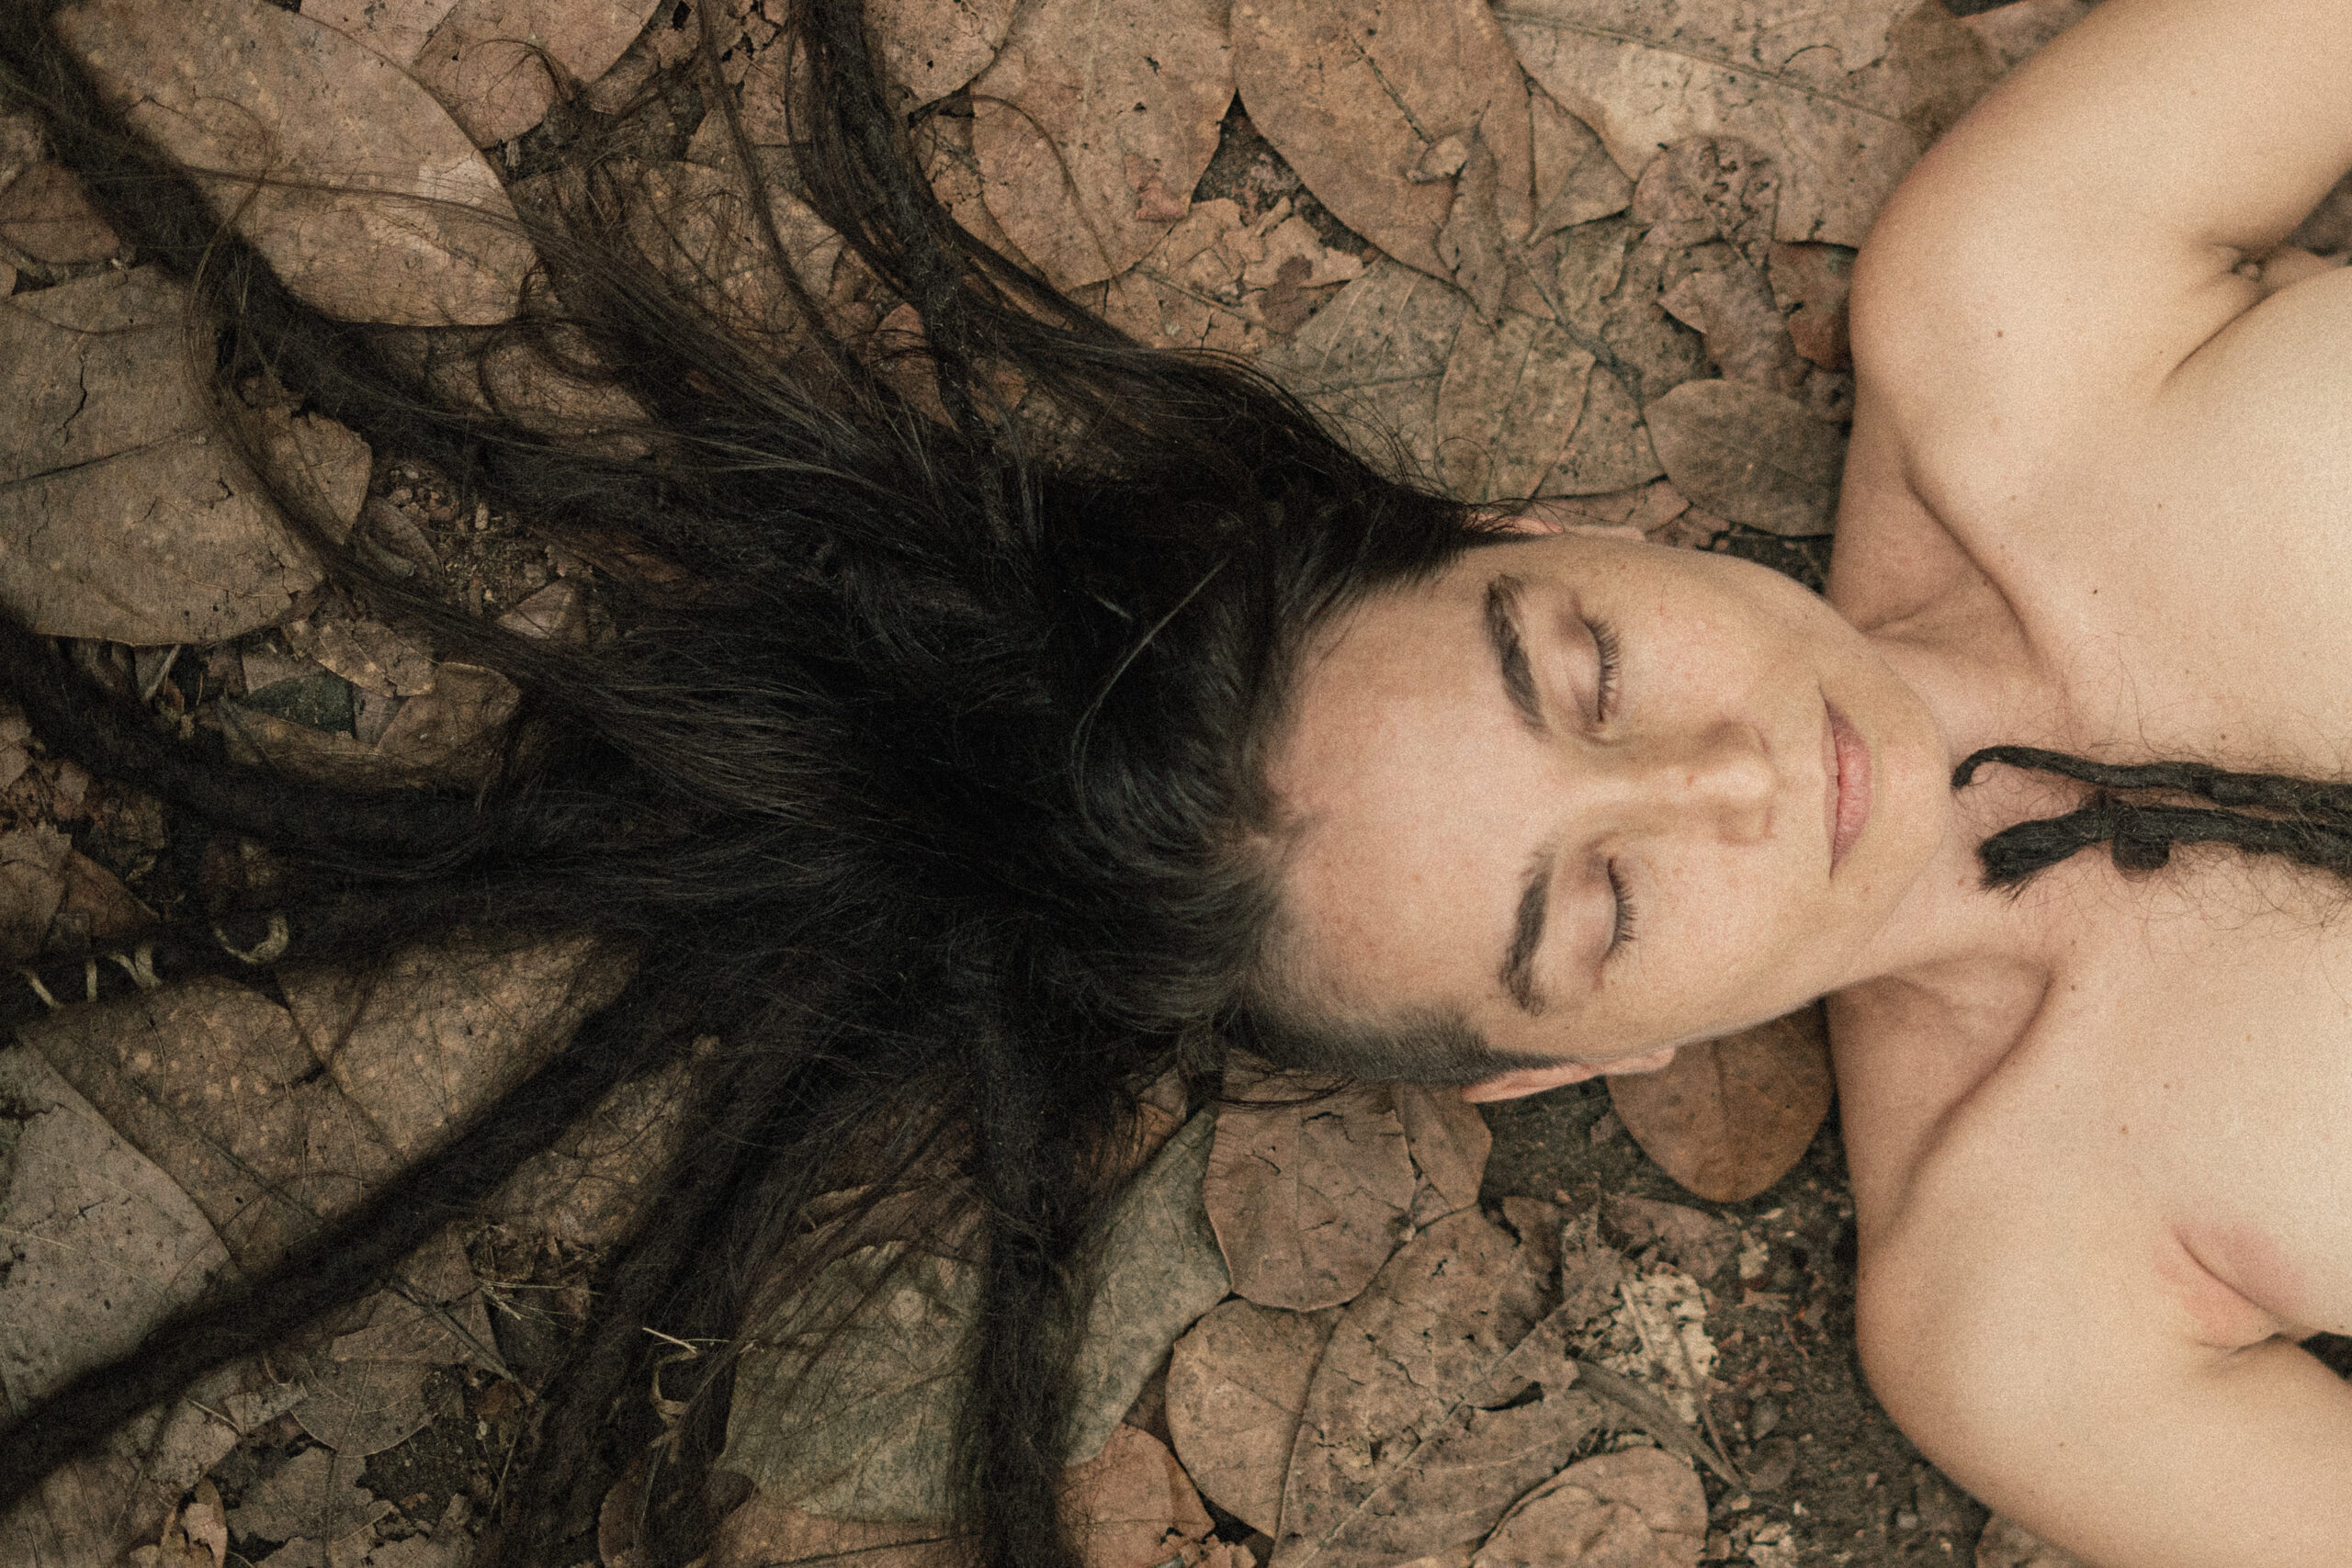 Imagem colorida de mulher deita em um chão rachado. Ela está com o torso despido e os cabelos espalhados pelo chão.